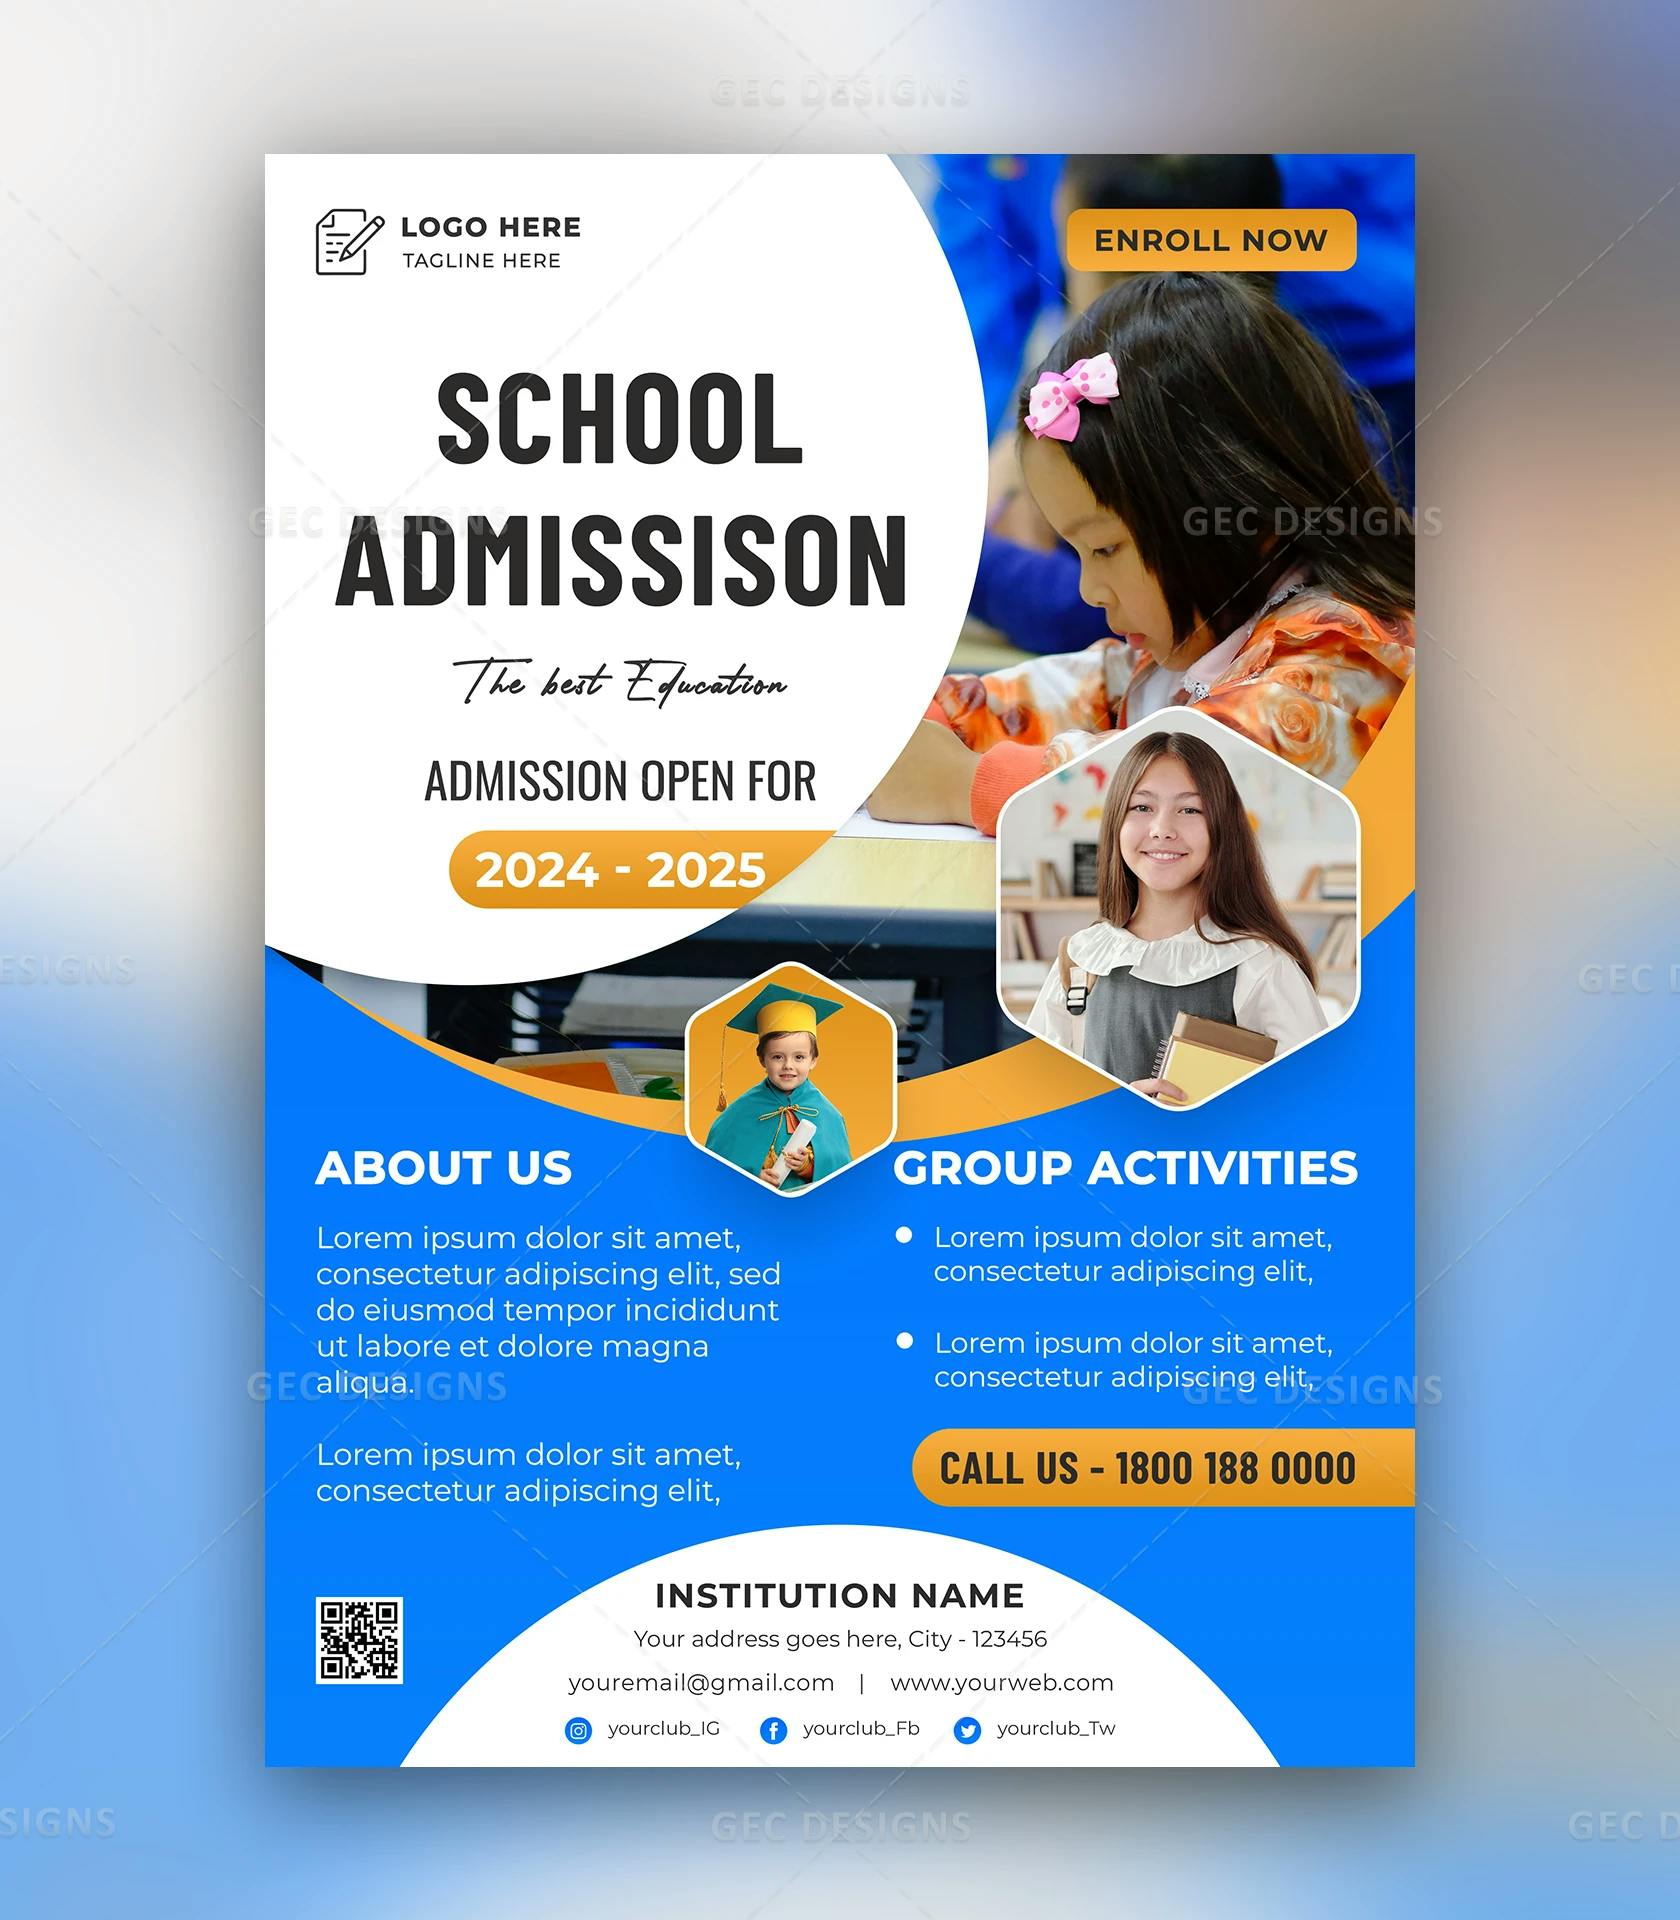 School admission promotion flyer design in sky blue